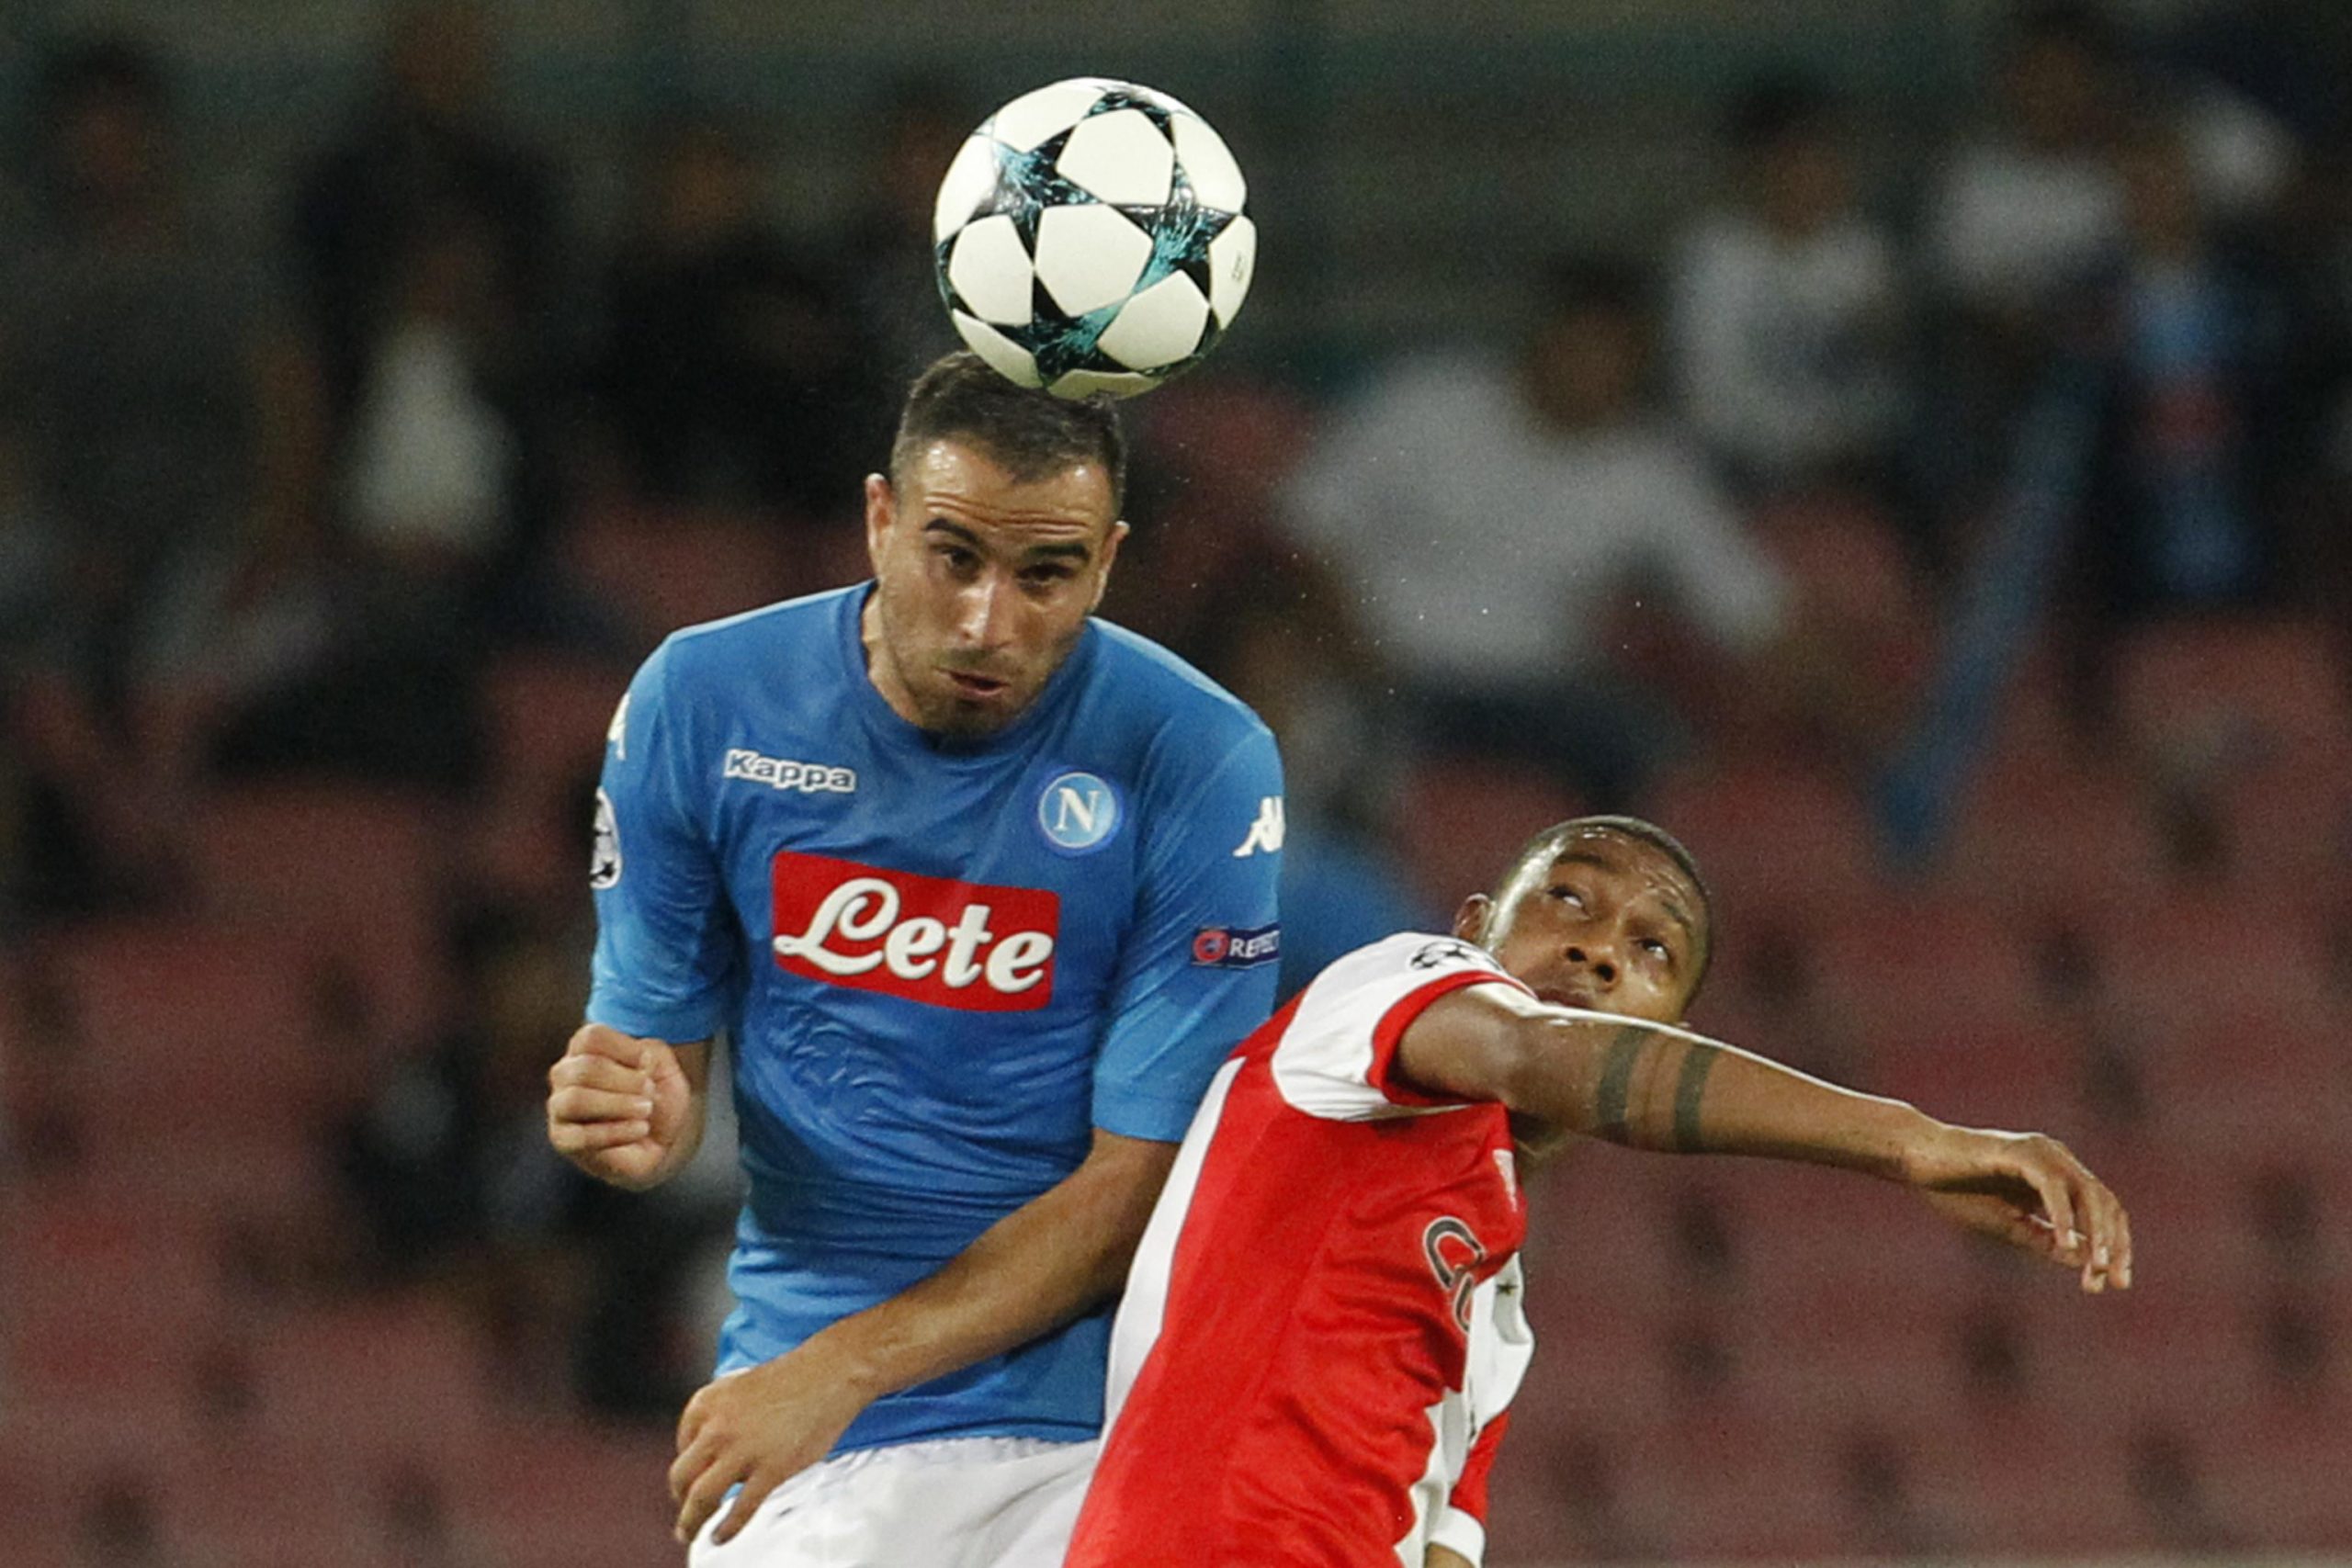 Tottenham Hotspur are keeping tabs on Napoli defender Nikola Maksimovic